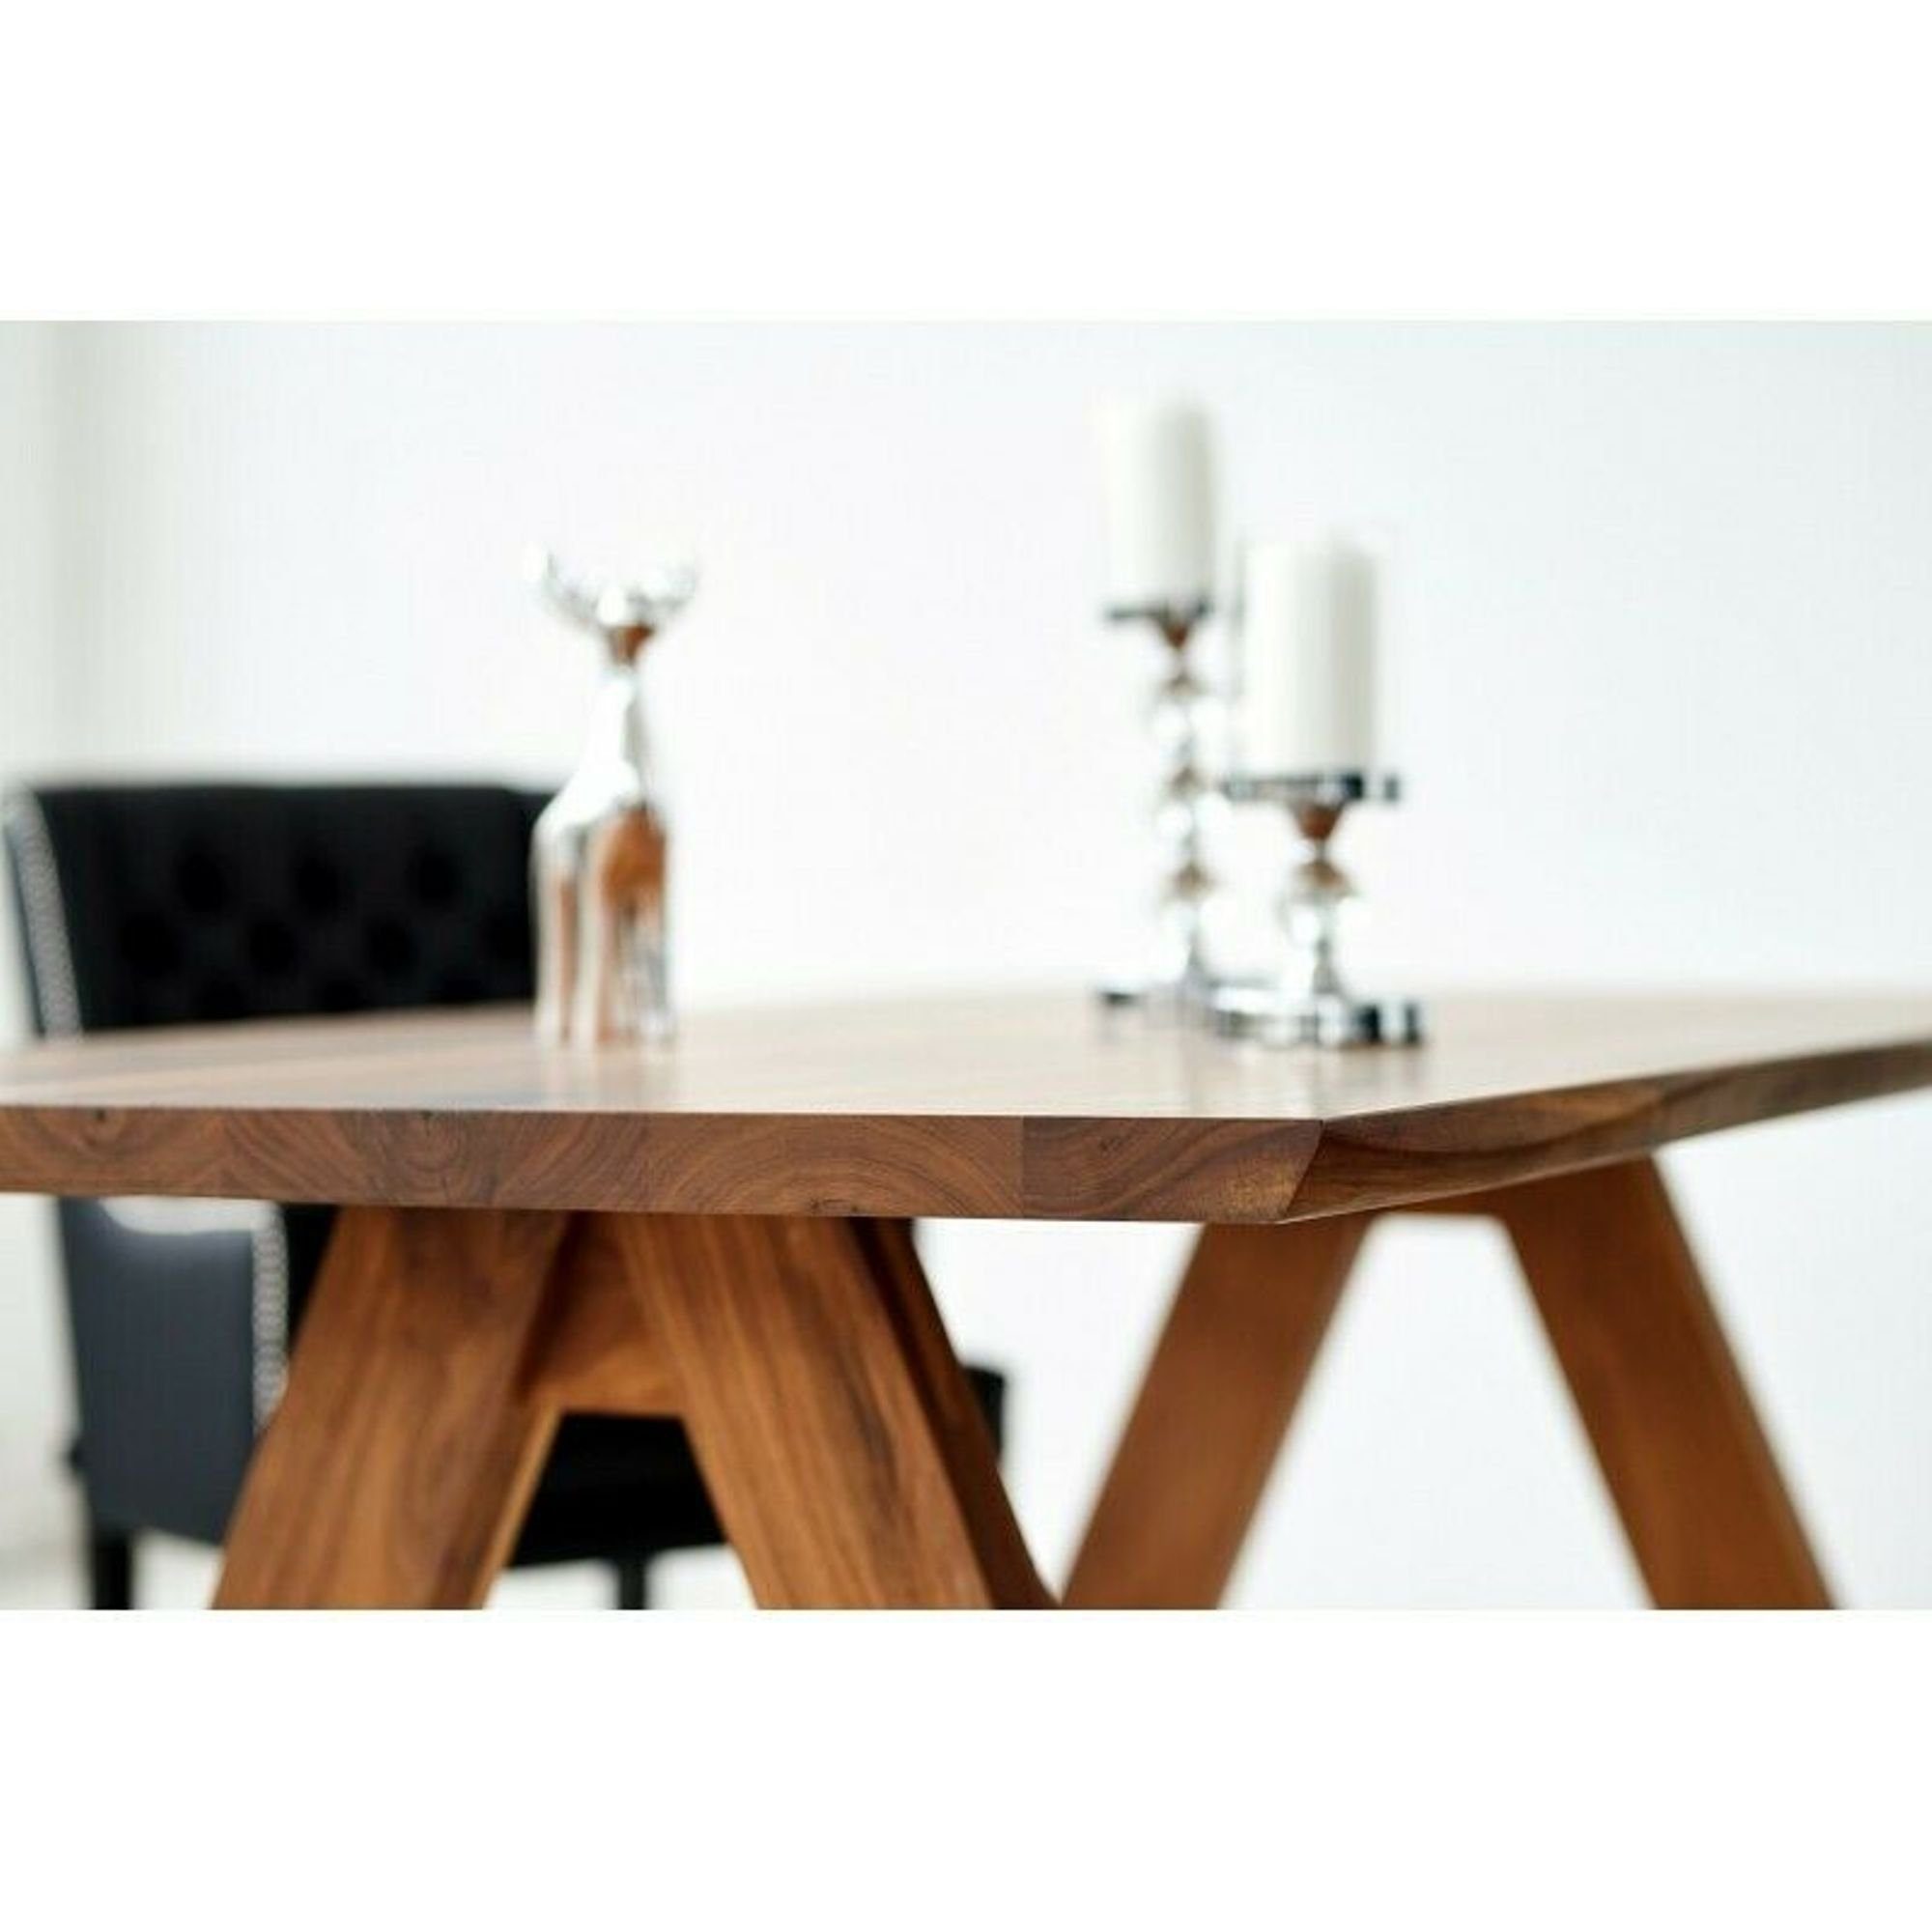 JVmoebel Sitz Lehnstühle Esszimmer + Stühle Holz Essgruppe, Gruppe Stuhl Design Chesterfield Tisch 6